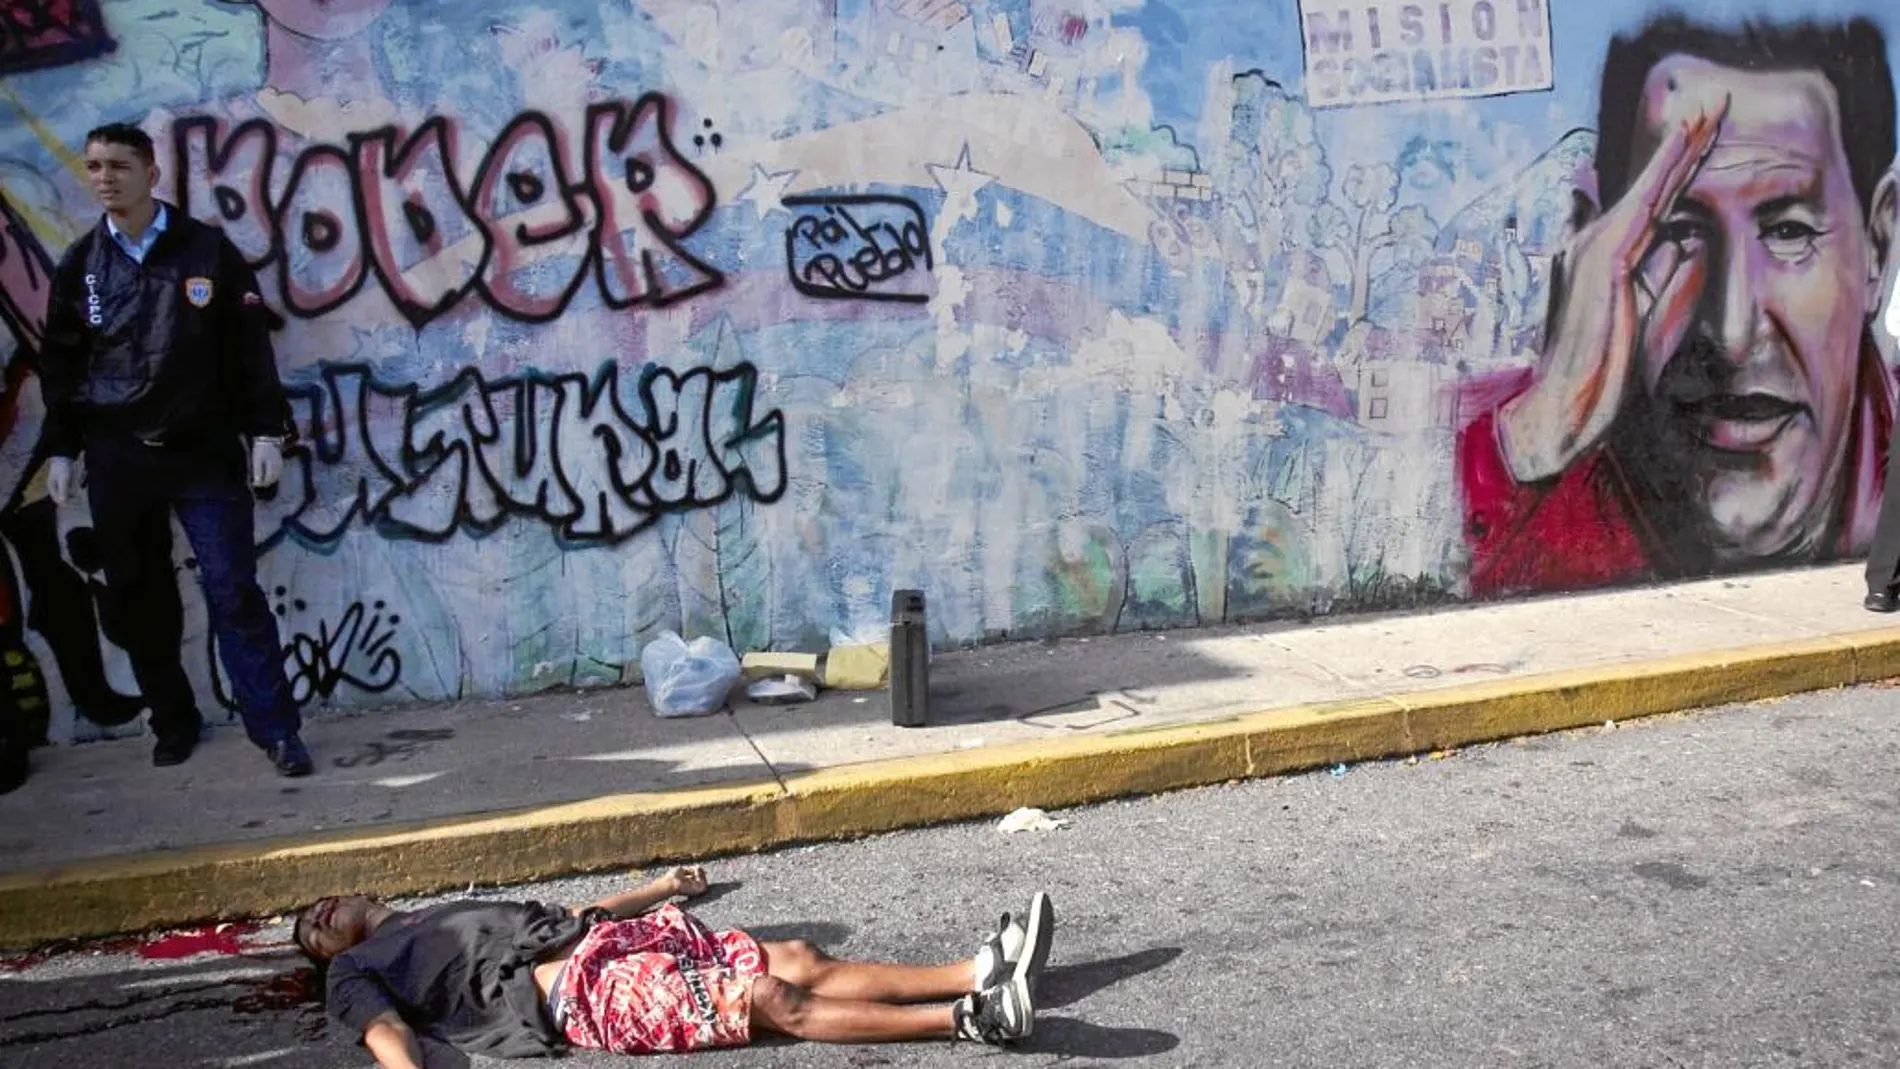 El cuerpo sin vida de un joven yace en el suelo tras un tiroteo en Caracas